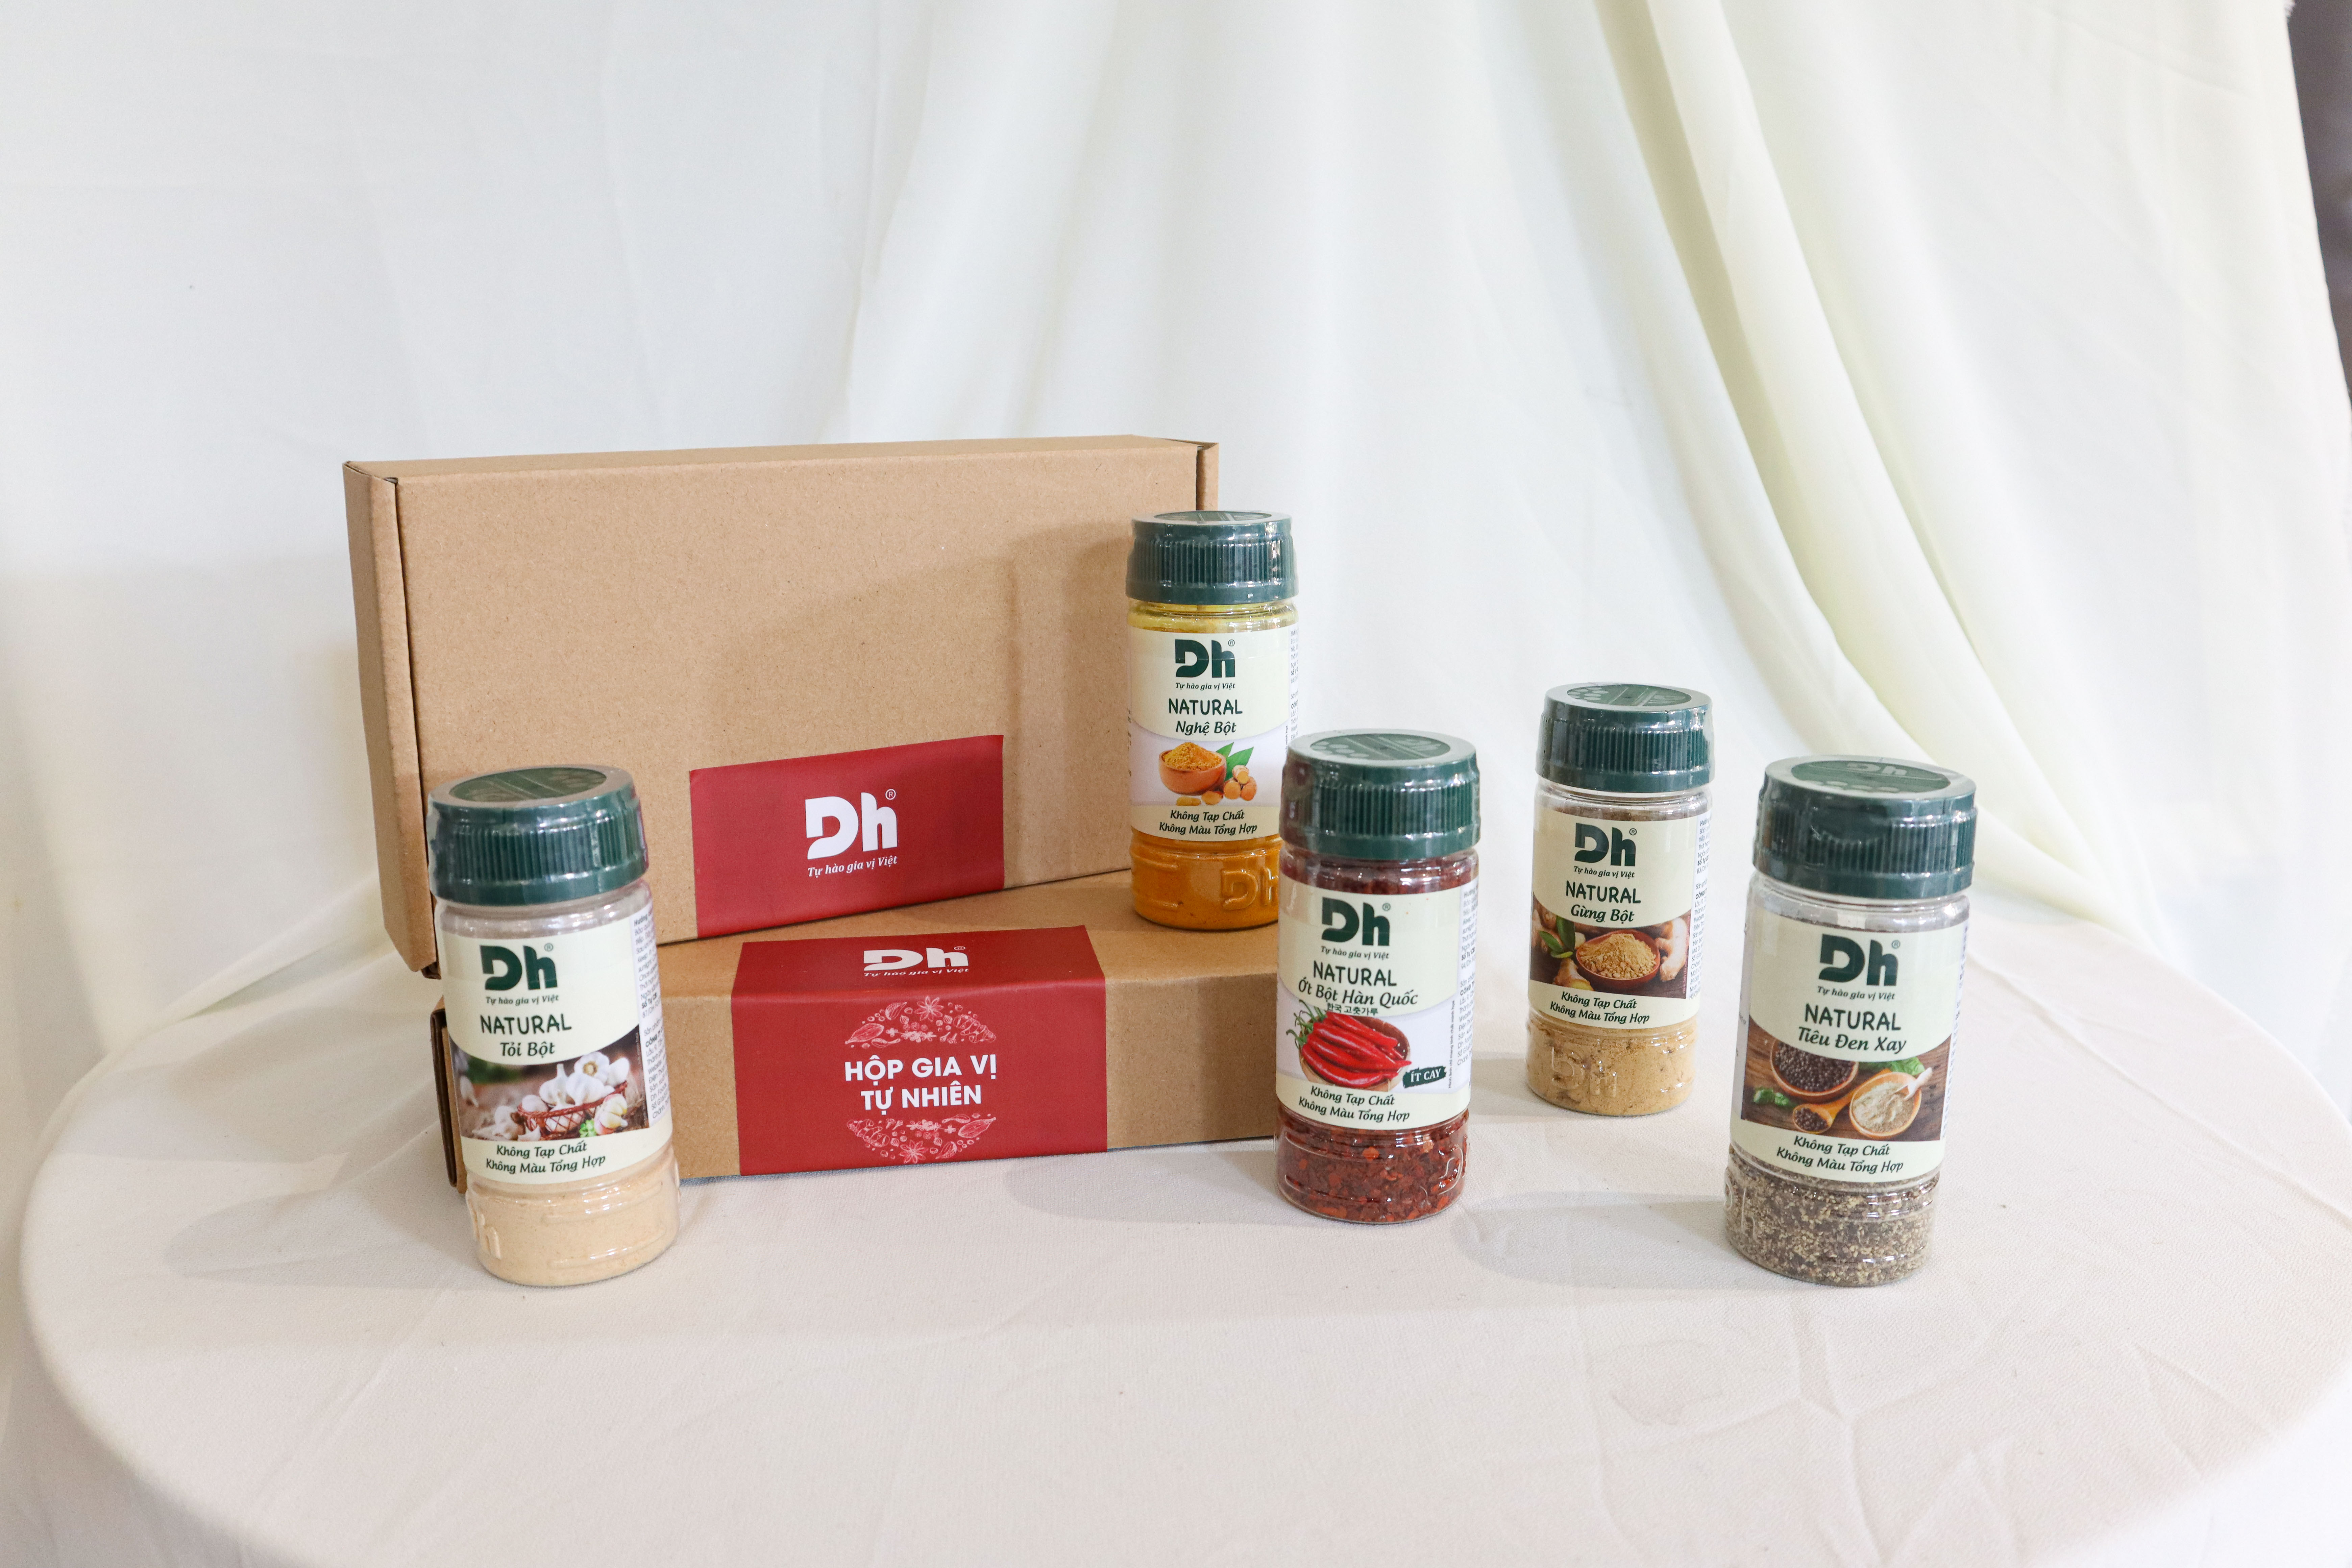 Hộp Gia Vị Tự Nhiên Dh Foods - Set 5 loại nguyên liệu chế biến thực phẩm - Natural Ớt Bột Hàn Quốc, Tiêu Đen Xay, Tỏi Bột, Nghệ Bột, Gừng Bột